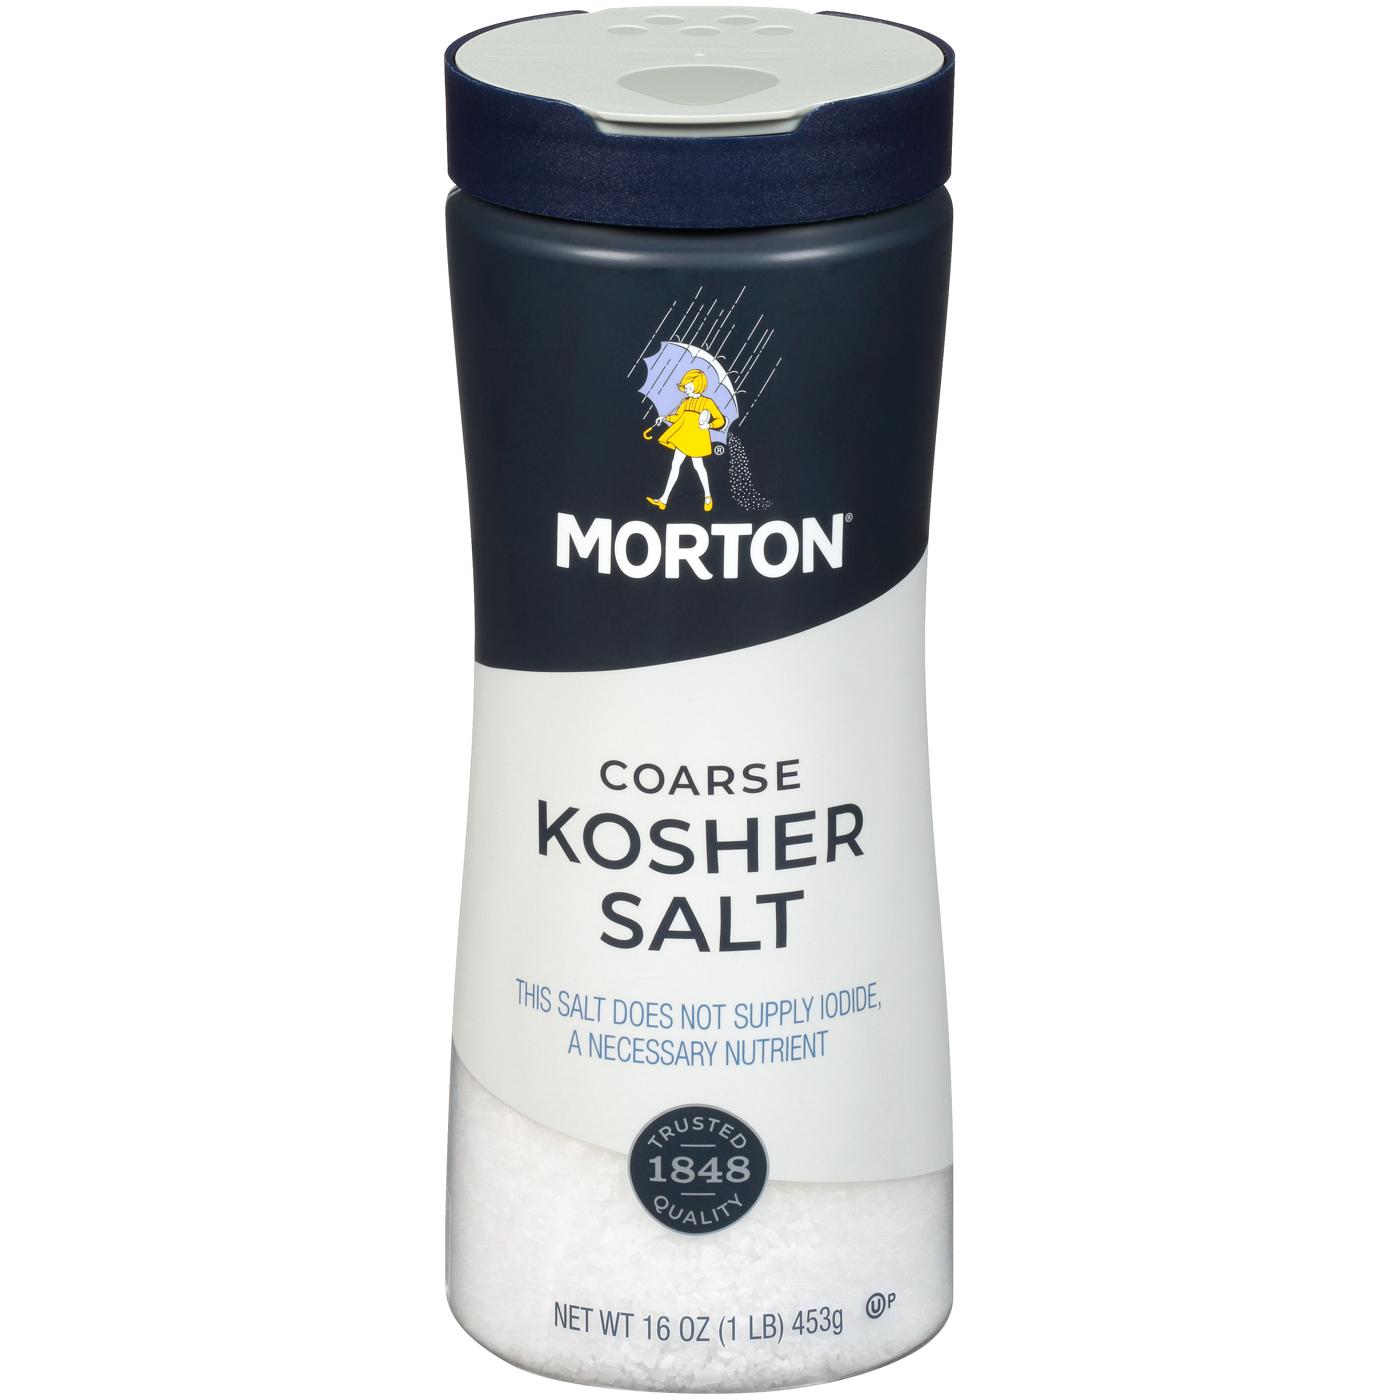 Morton Coarse Kosher Salt; image 1 of 4